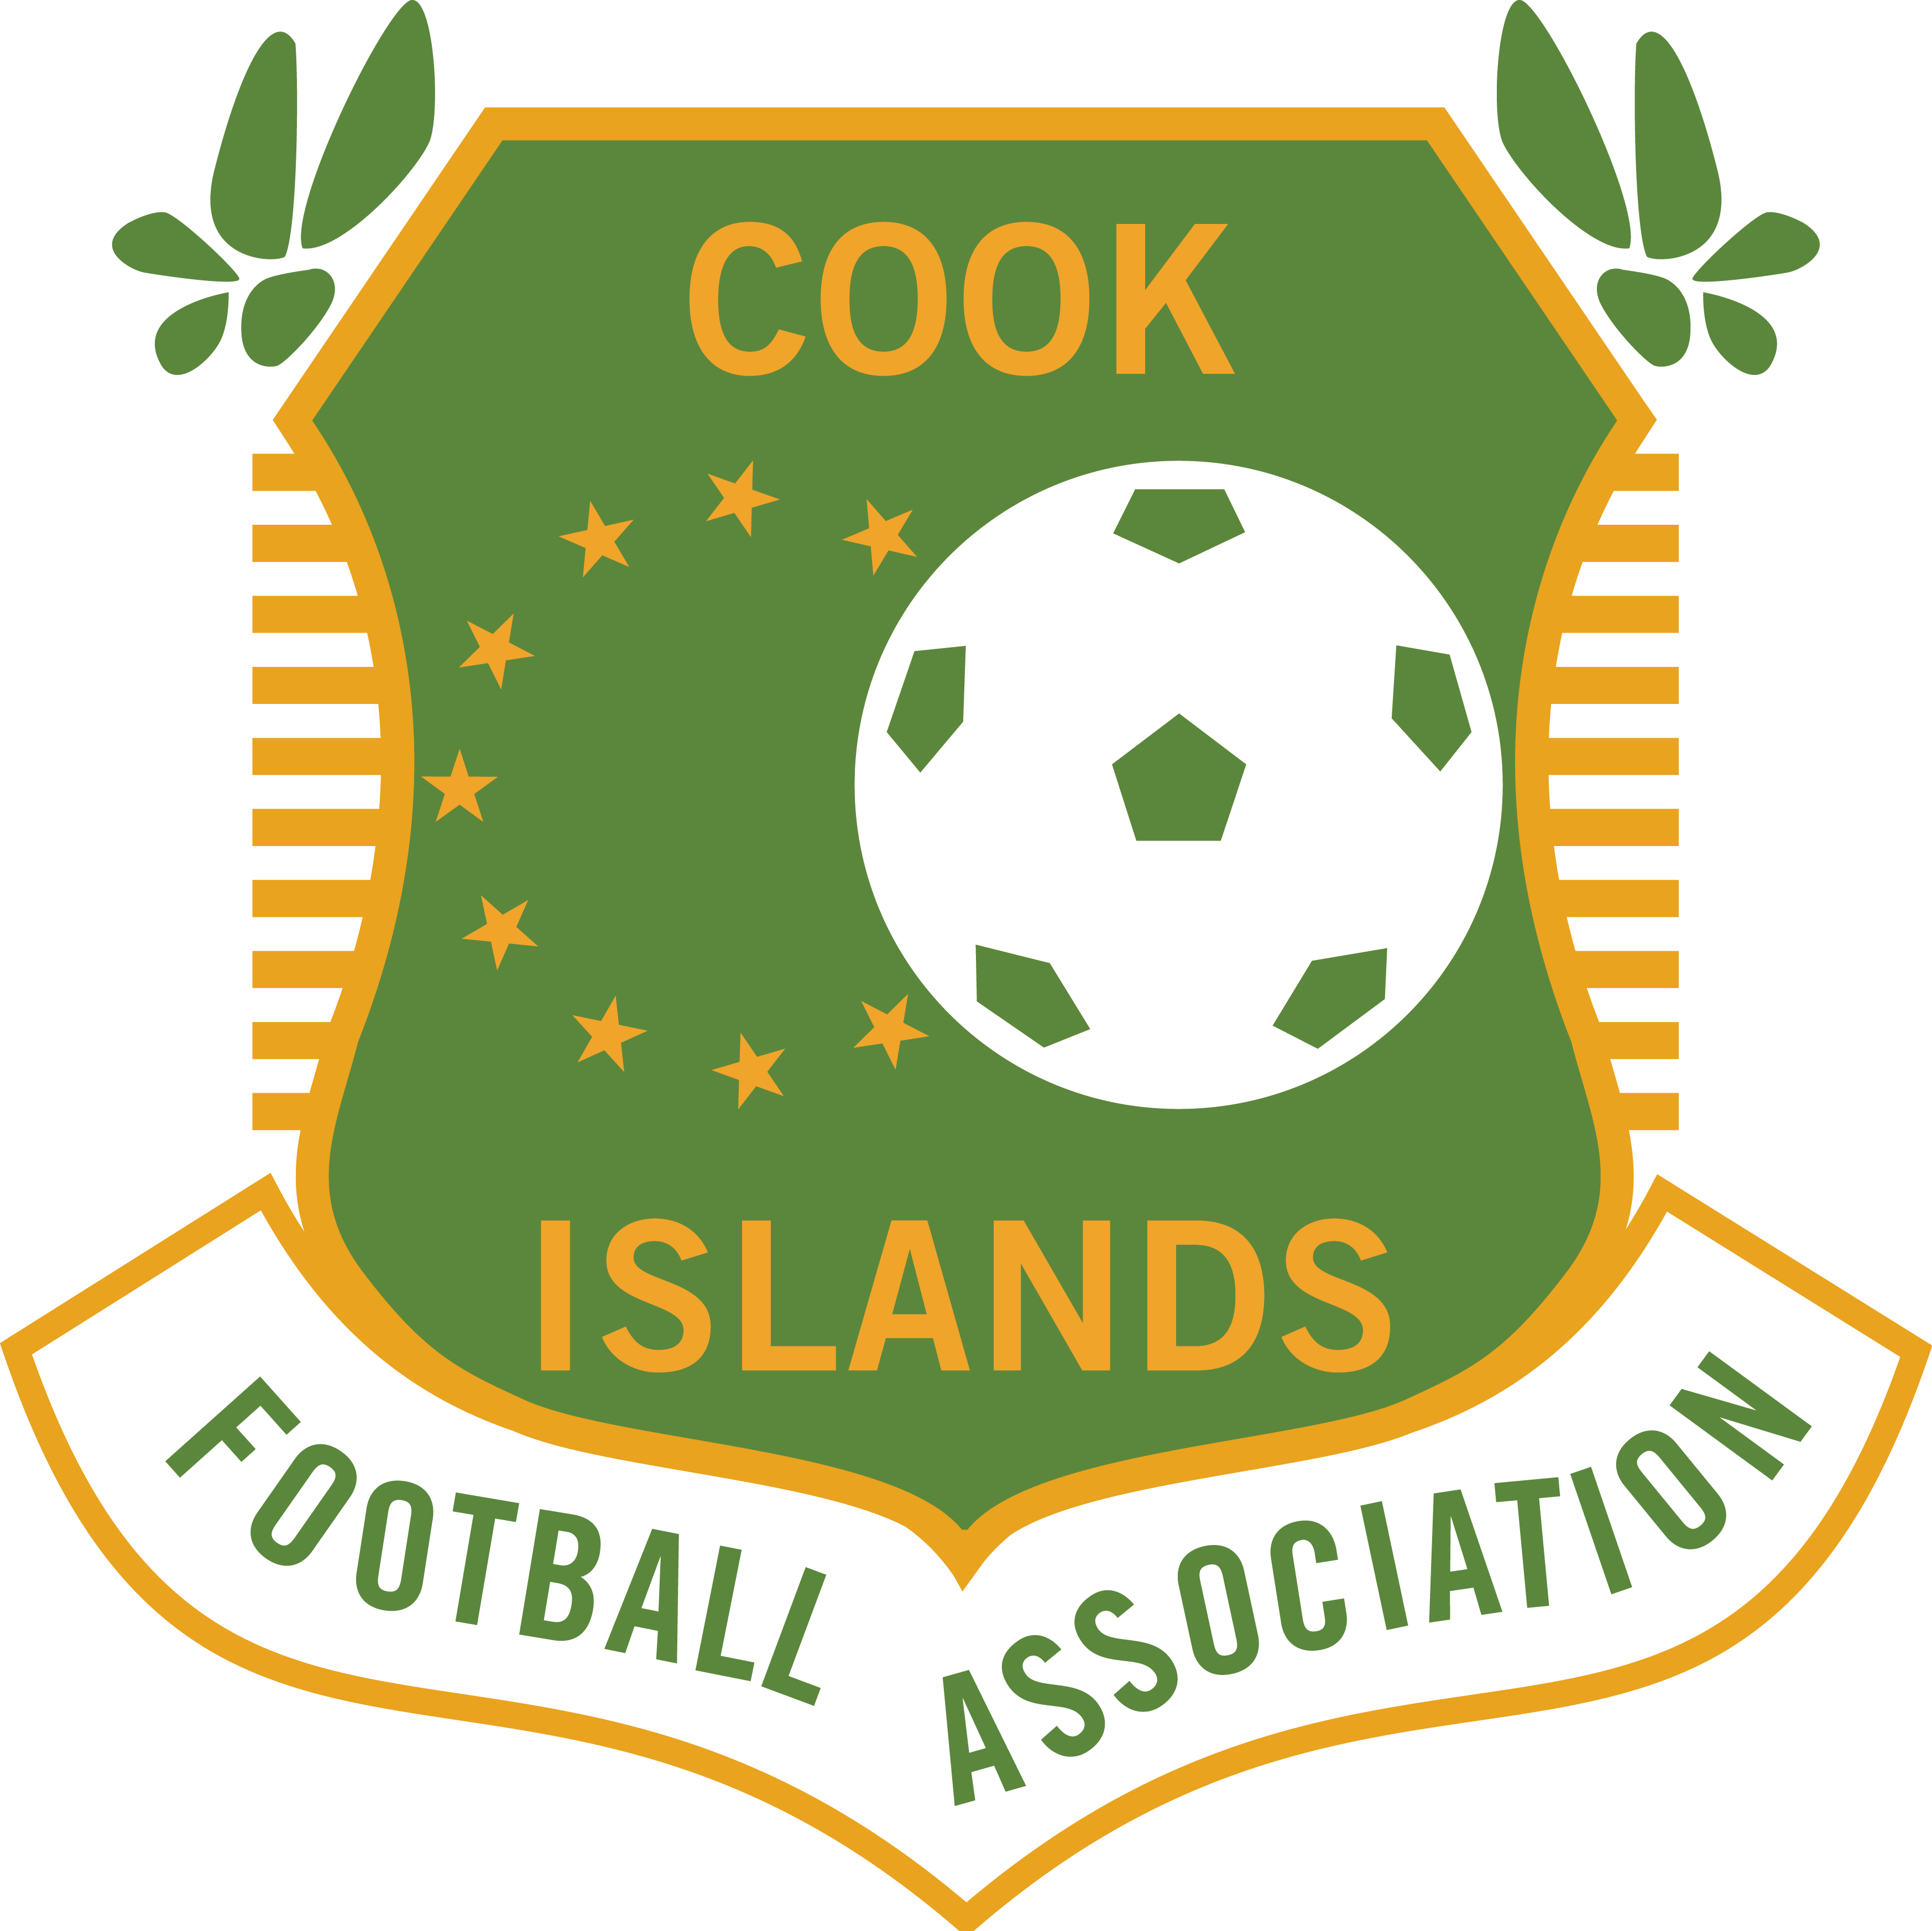 庫克群島國家足球隊